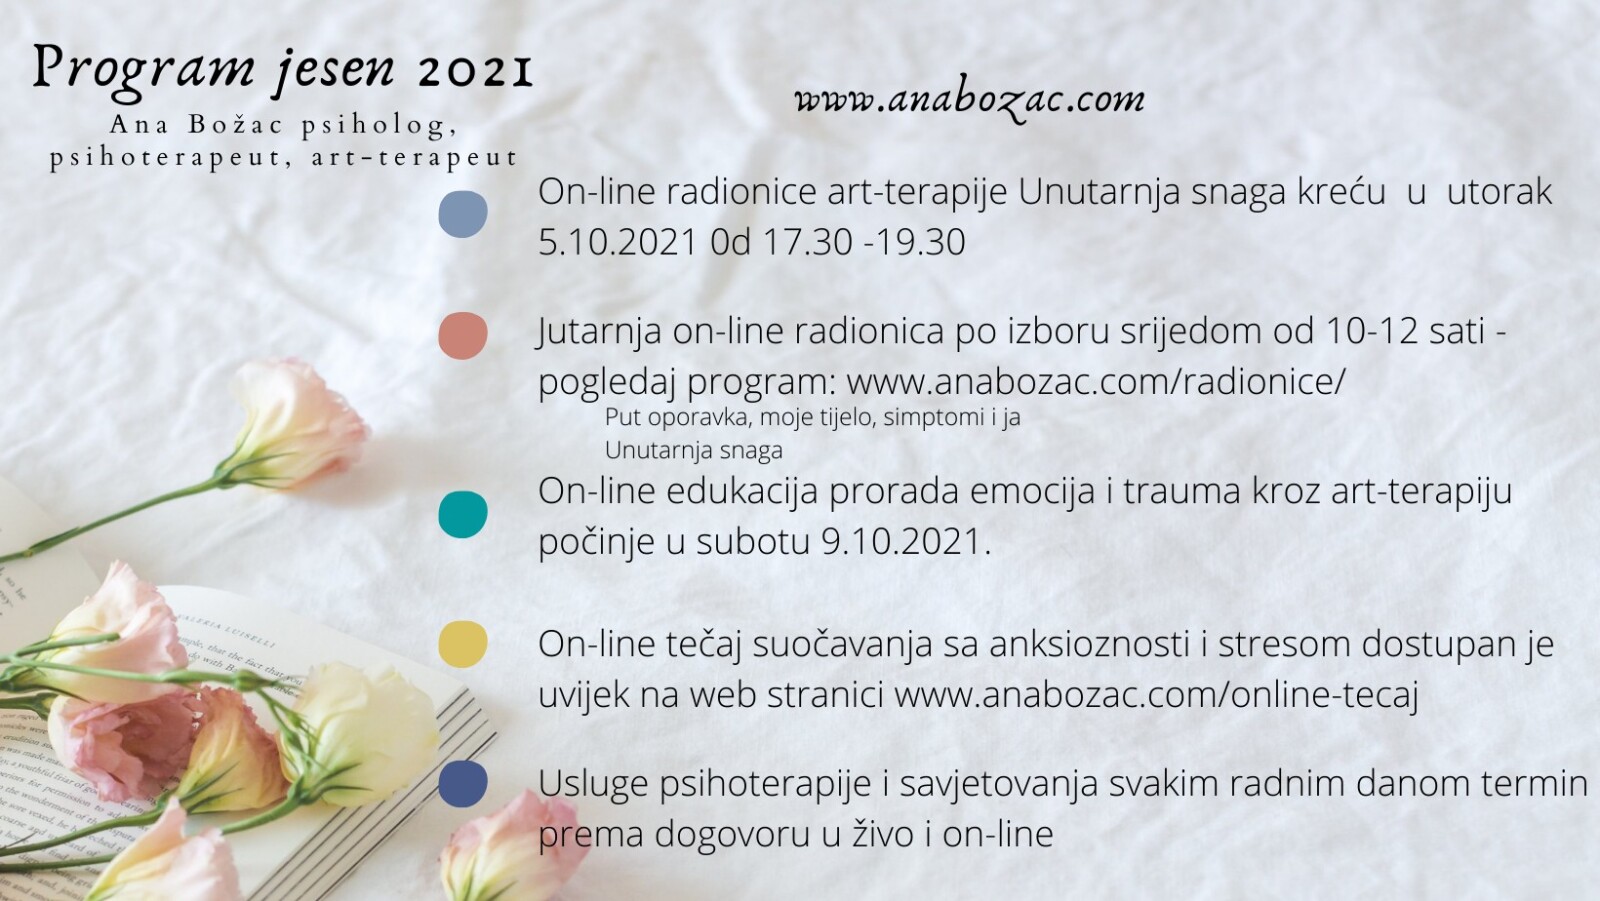 On-line tečaj suočavanja sa anksioznosti i stresom dostupan je uvijek na web stranici www.anabozac.comonline-tecaj (2)